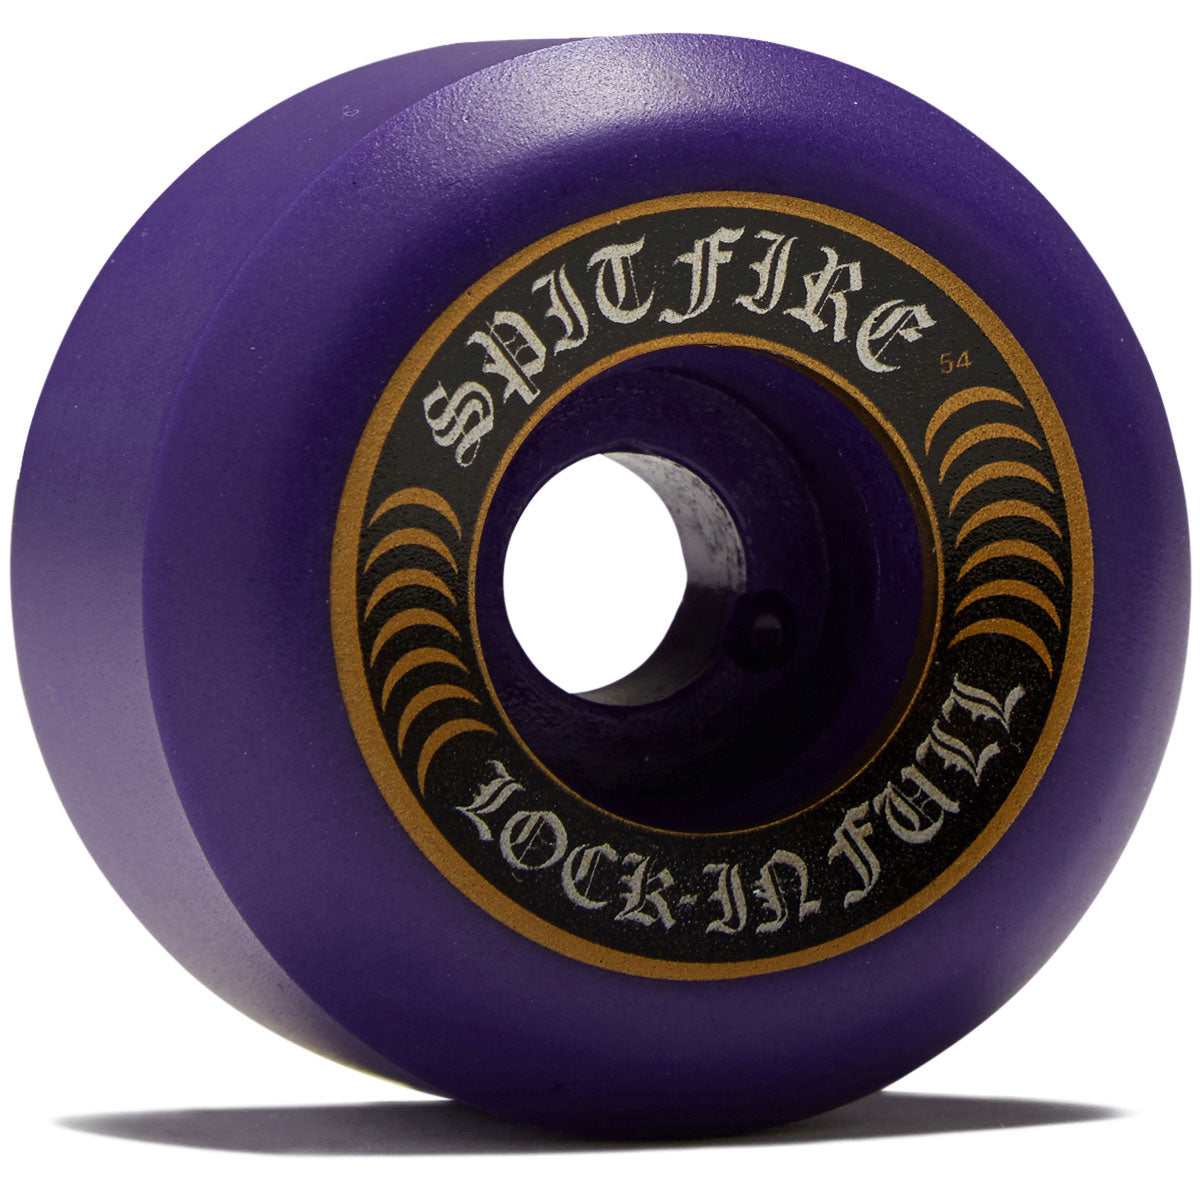 Spitfire F4 99 Lock-In Full Skateboard Wheels - Purple - 54mm image 1